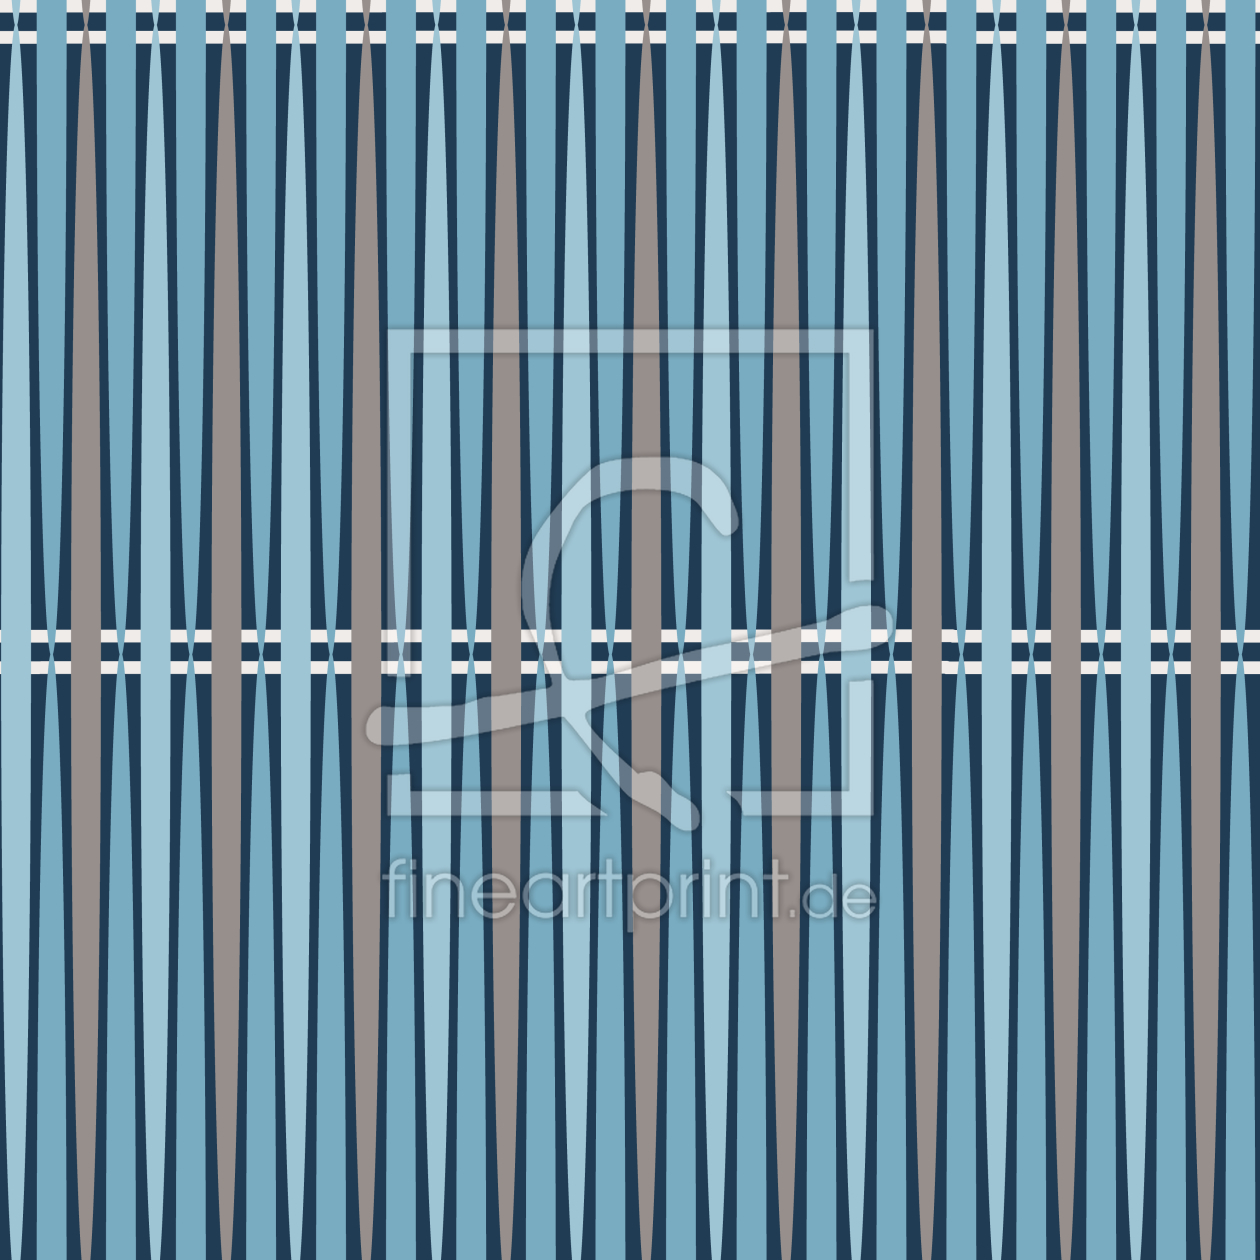 Bild-Nr.: 9010130 Business Streifen erstellt von patterndesigns-com